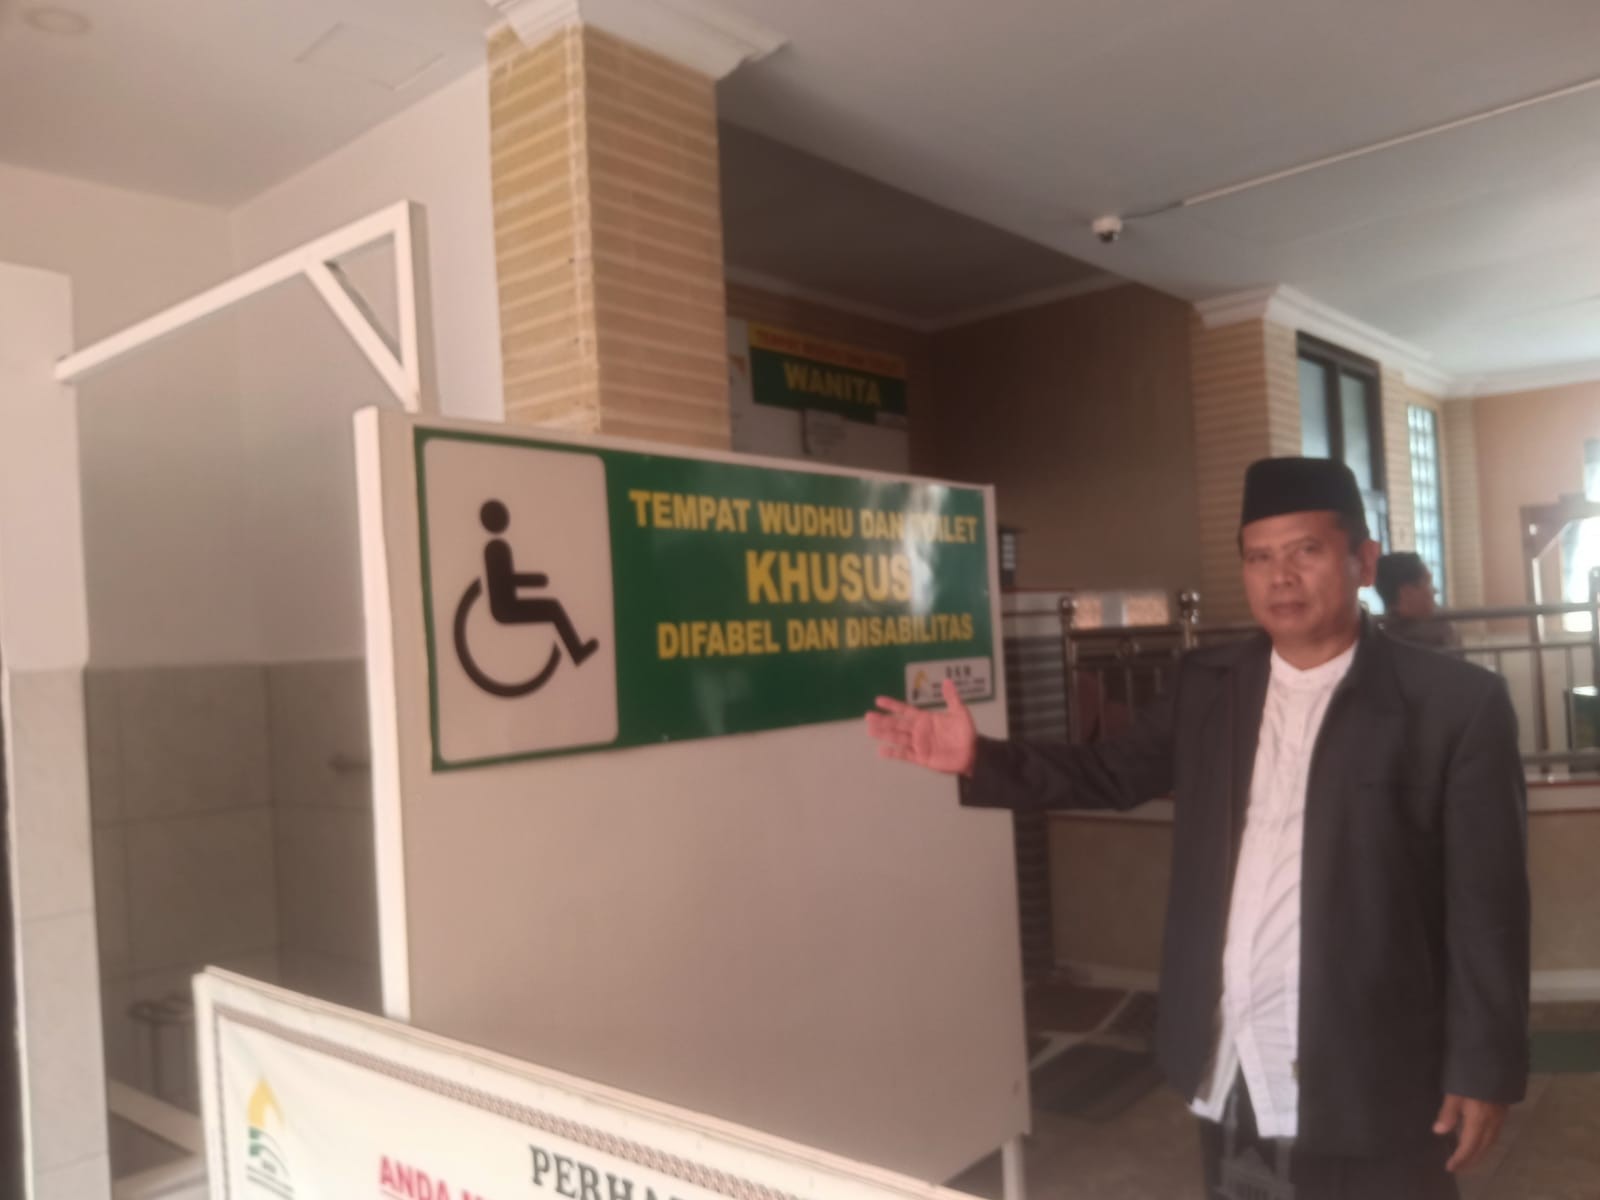 Masjid Agung Al Imam Majalengka Sediakan Tempat Wudhu dan Toilet Khusus untuk Disabilitas